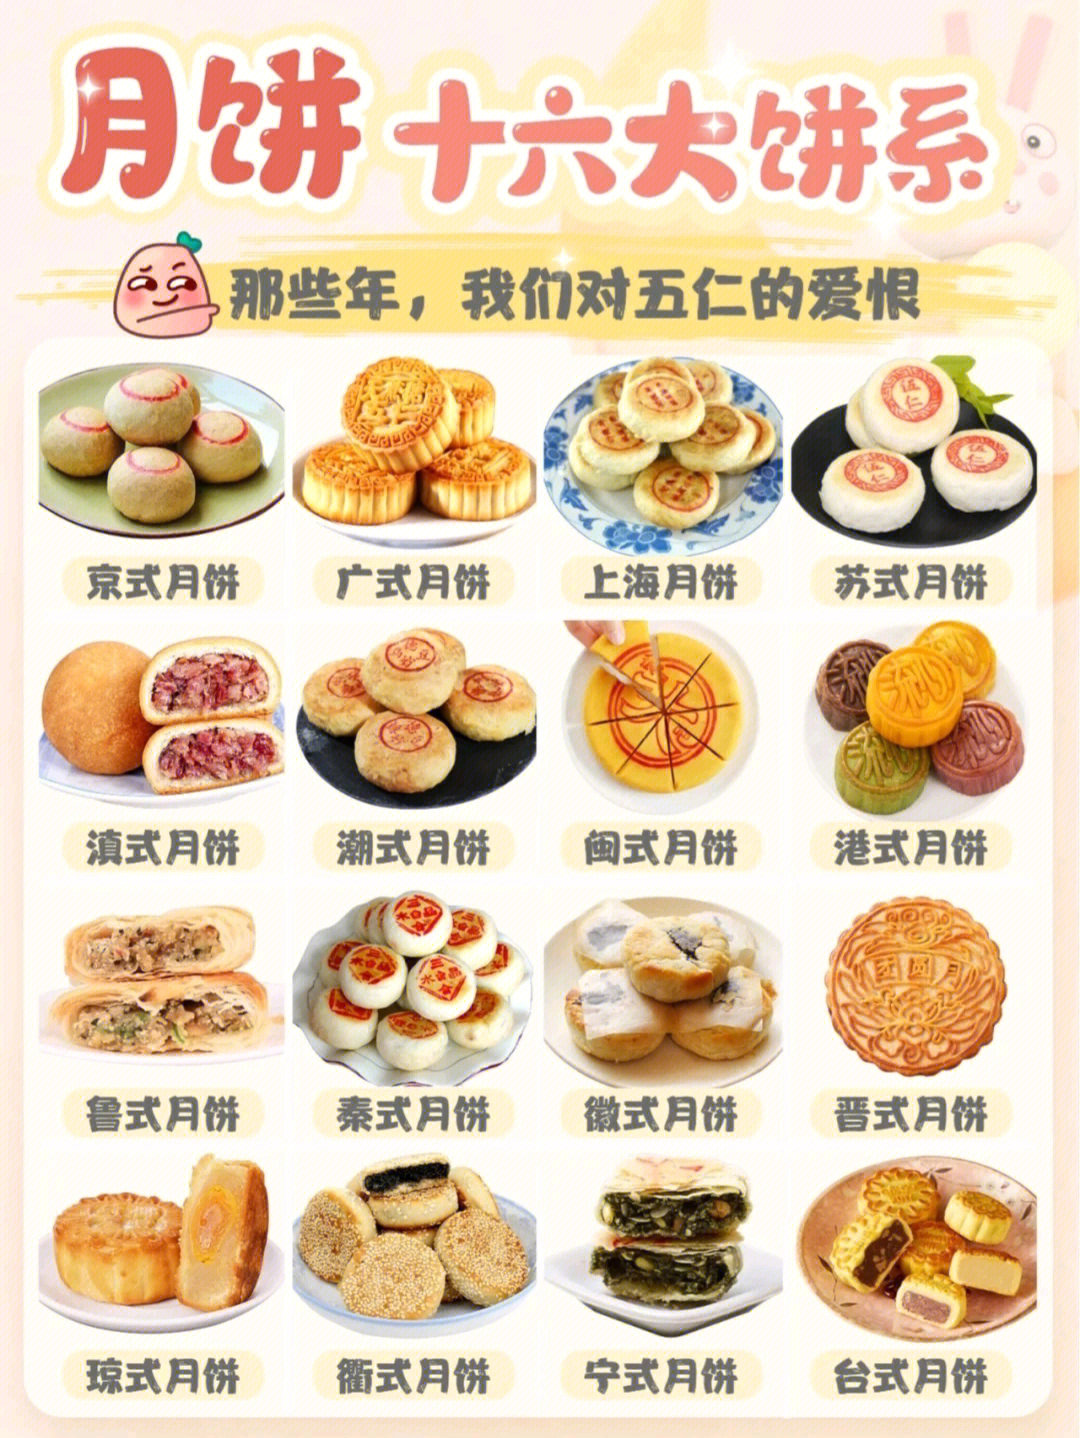 98699969976996五千年文明的中国,各地的月饼种类不胜